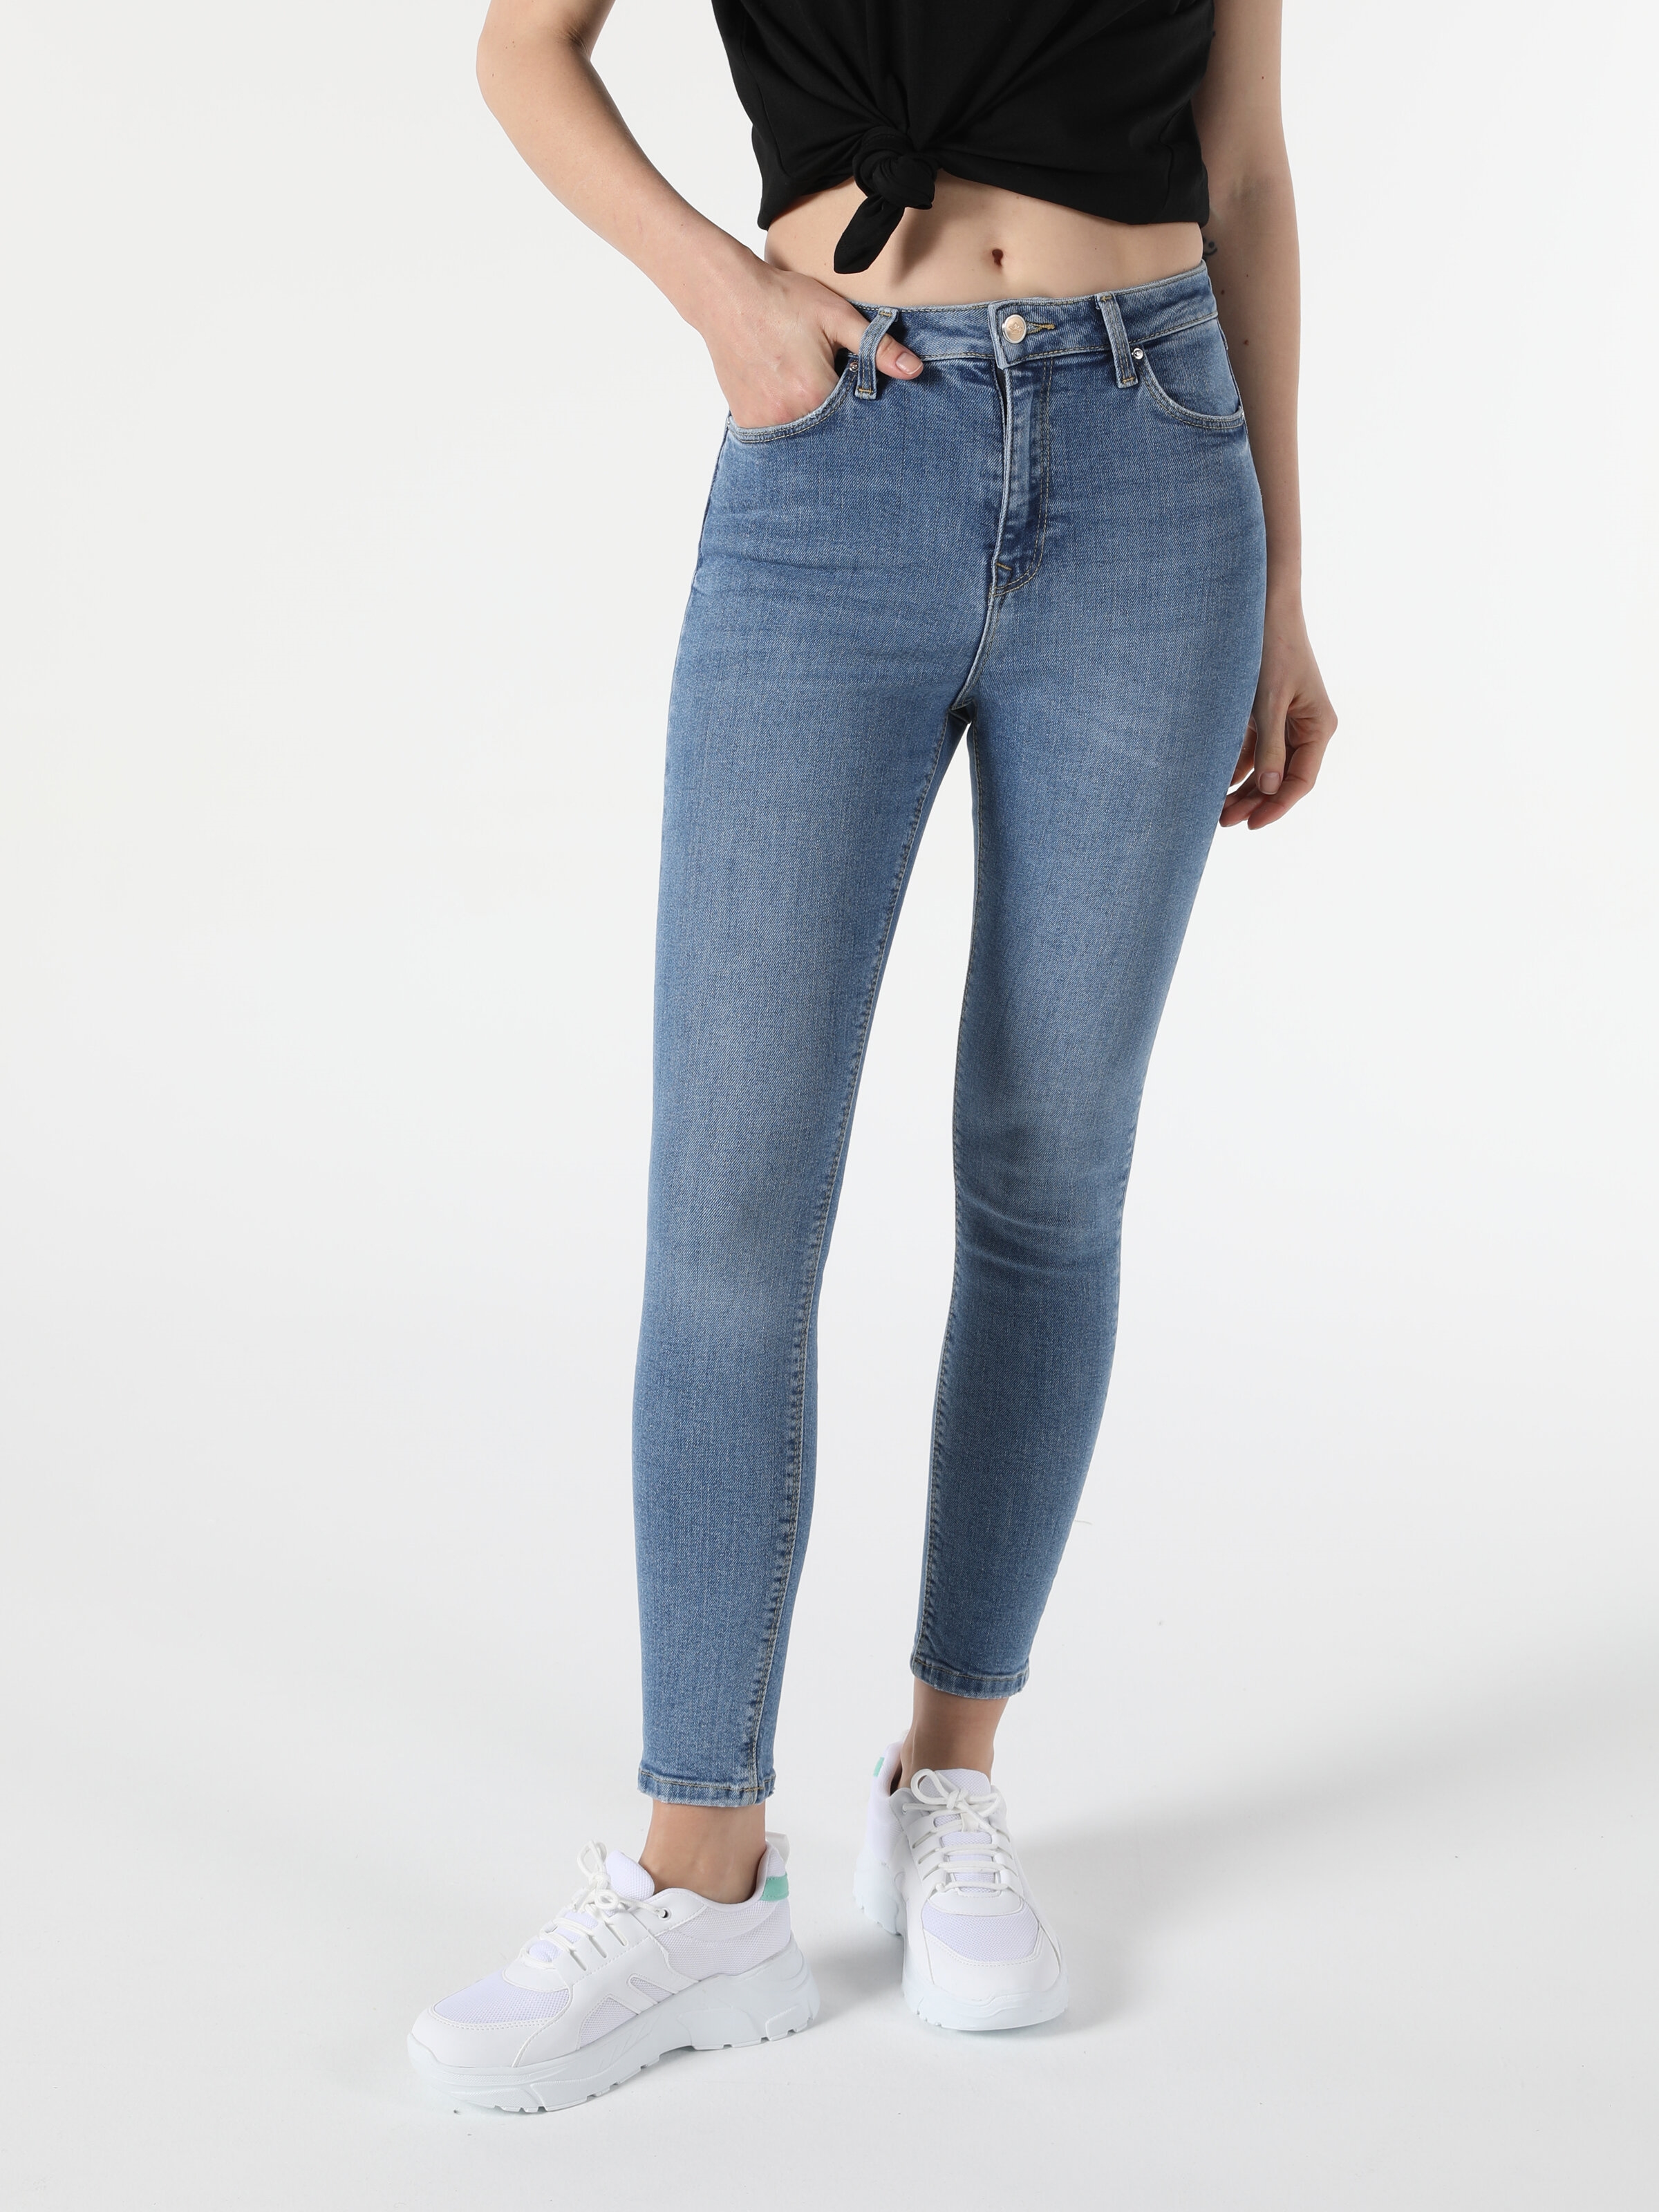 760 Dıana Yüksek Bel Dar Paça Super Slim Fit Kadın Jean Pantolon